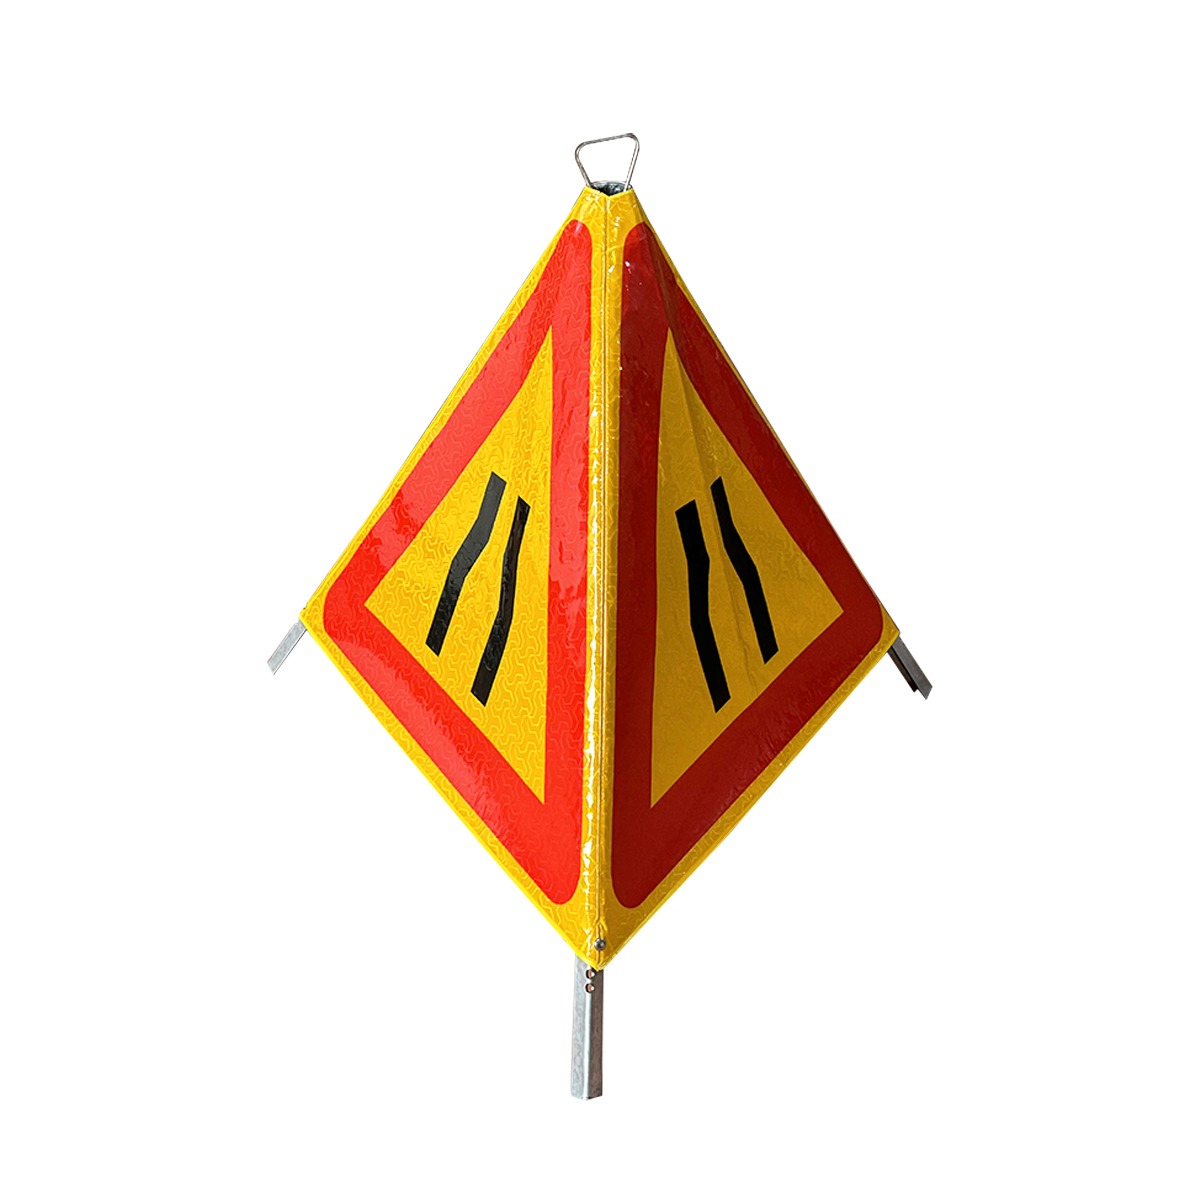 Road Narrows Reflective Folding Tripod Warning Sign - 